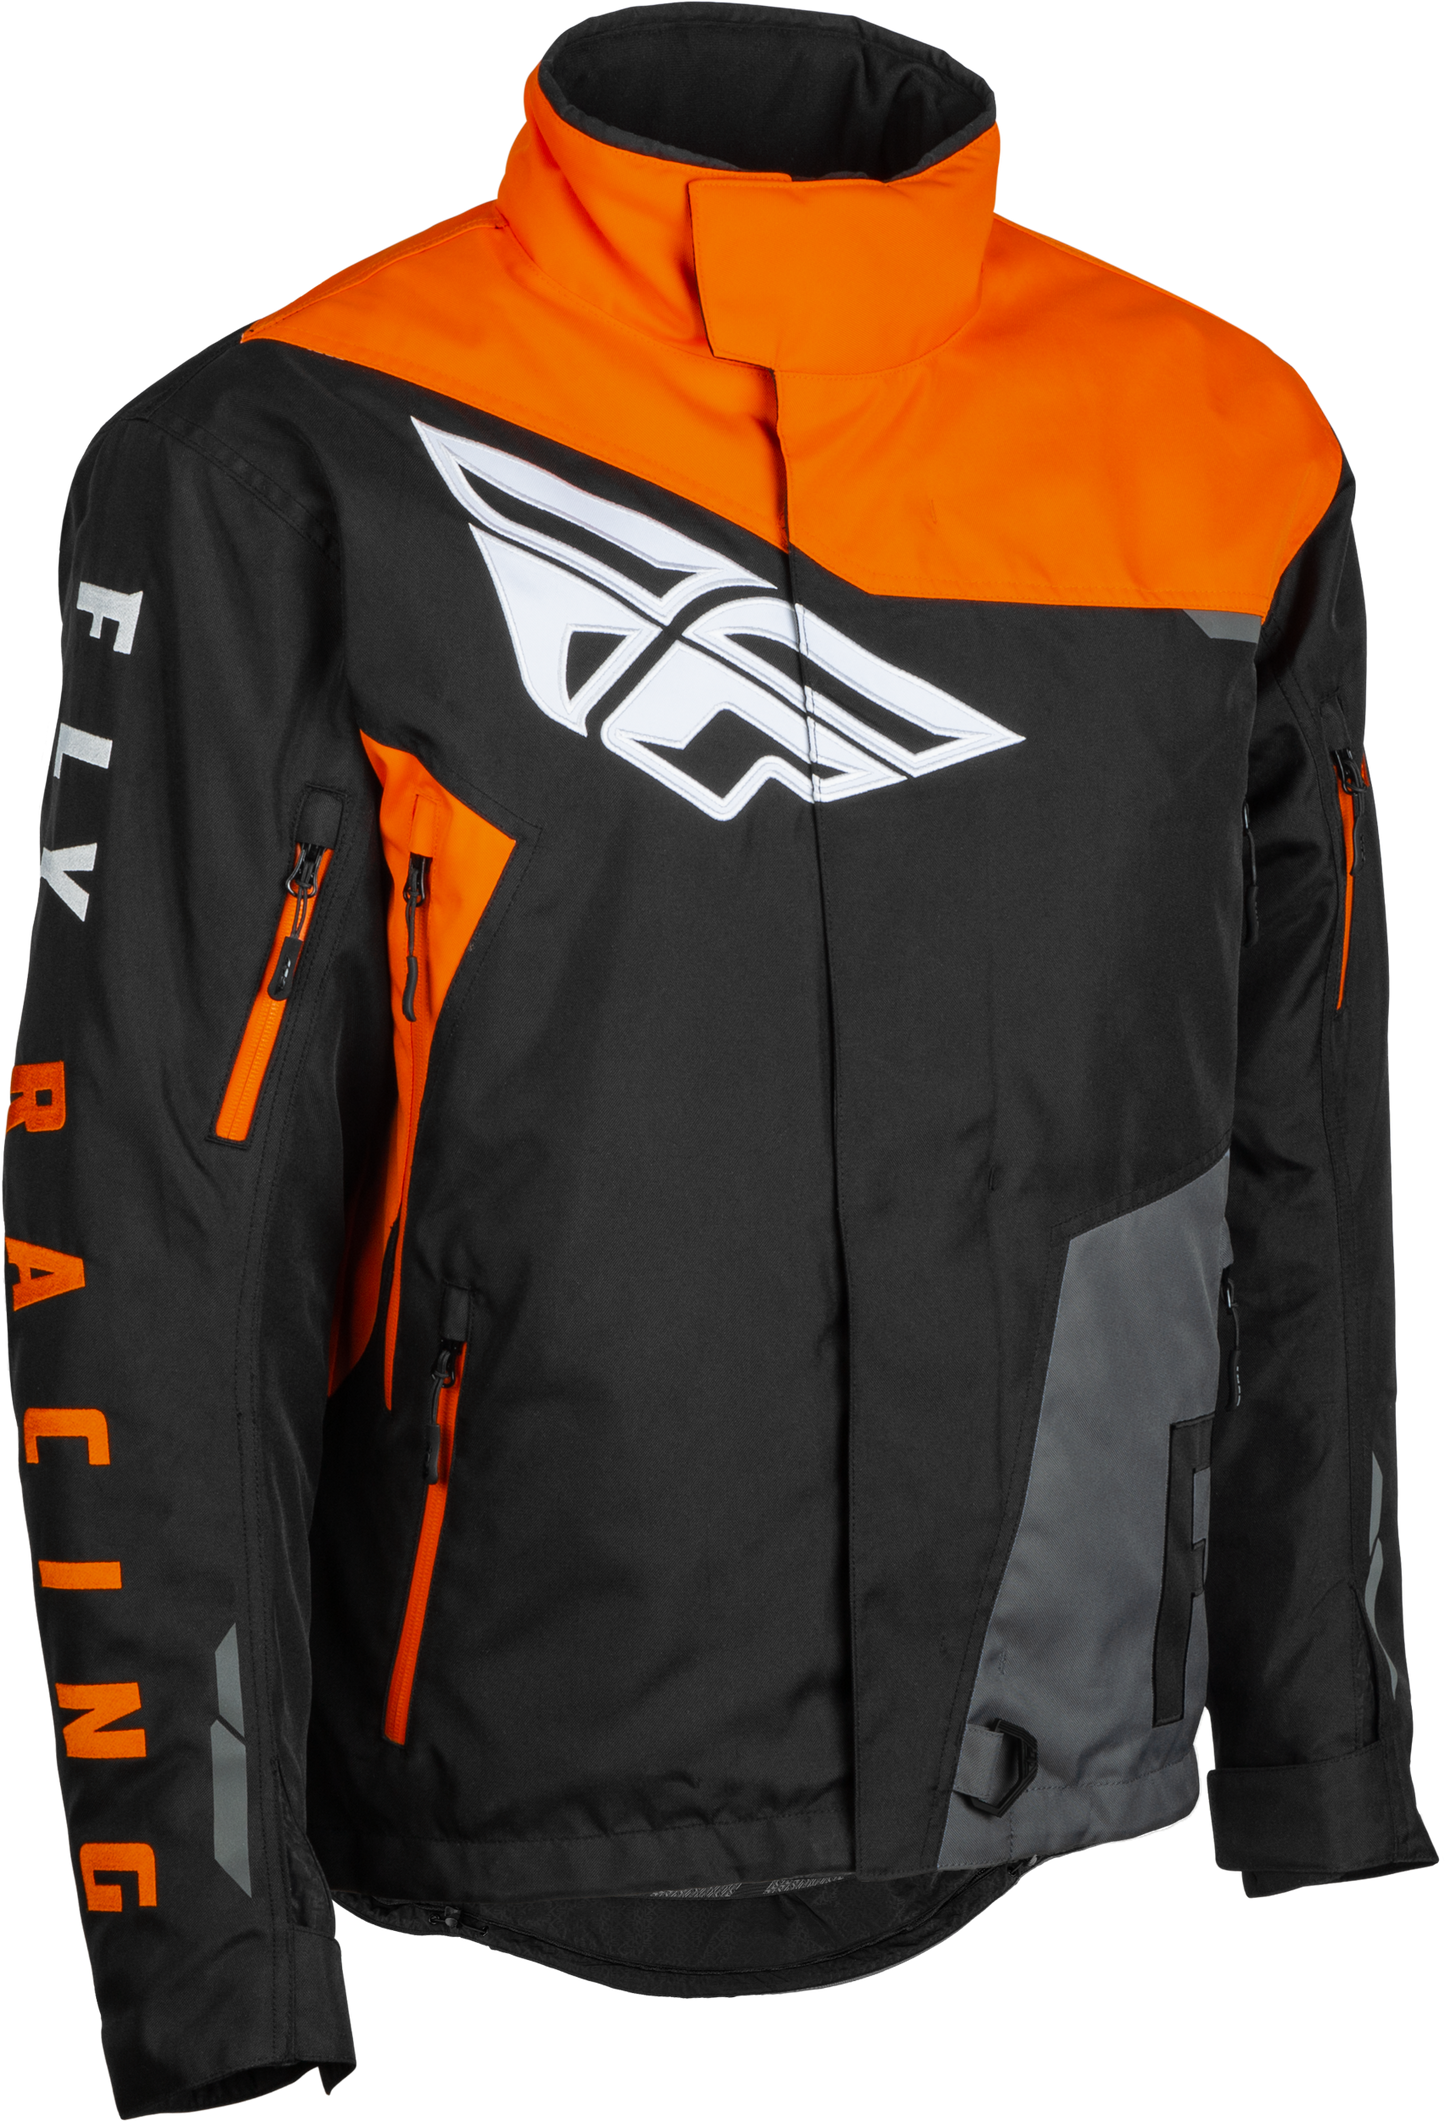 FLY RACING Snx Pro Jacket Black/Grey/Orange 3x 470-41183X